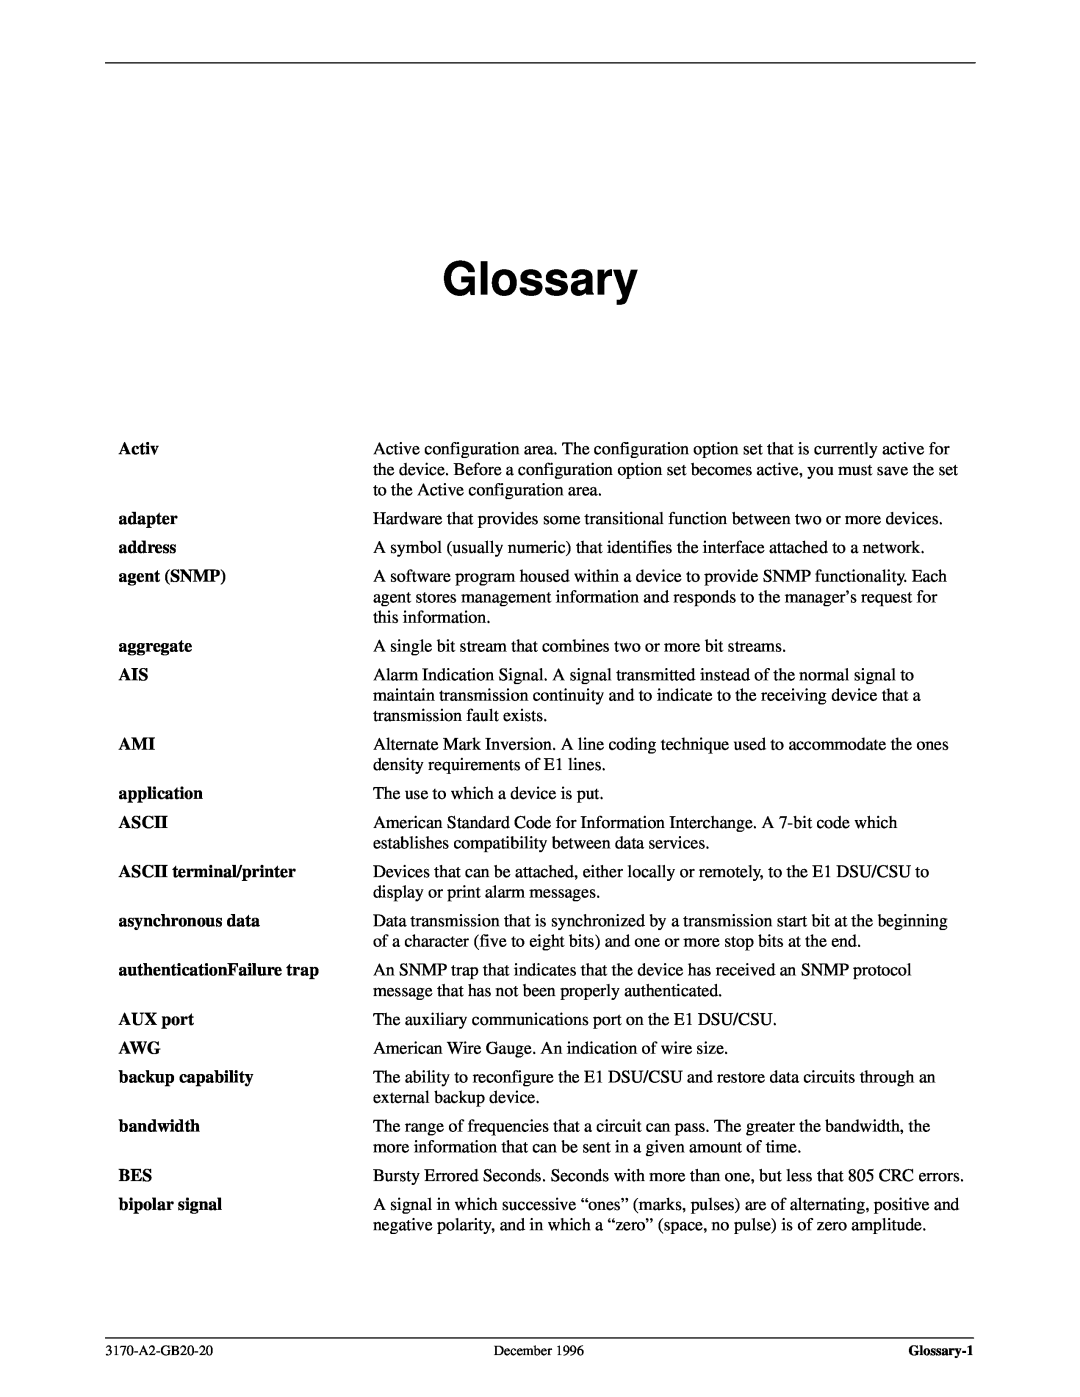 Paradyne 317x E1 manual Glossary 